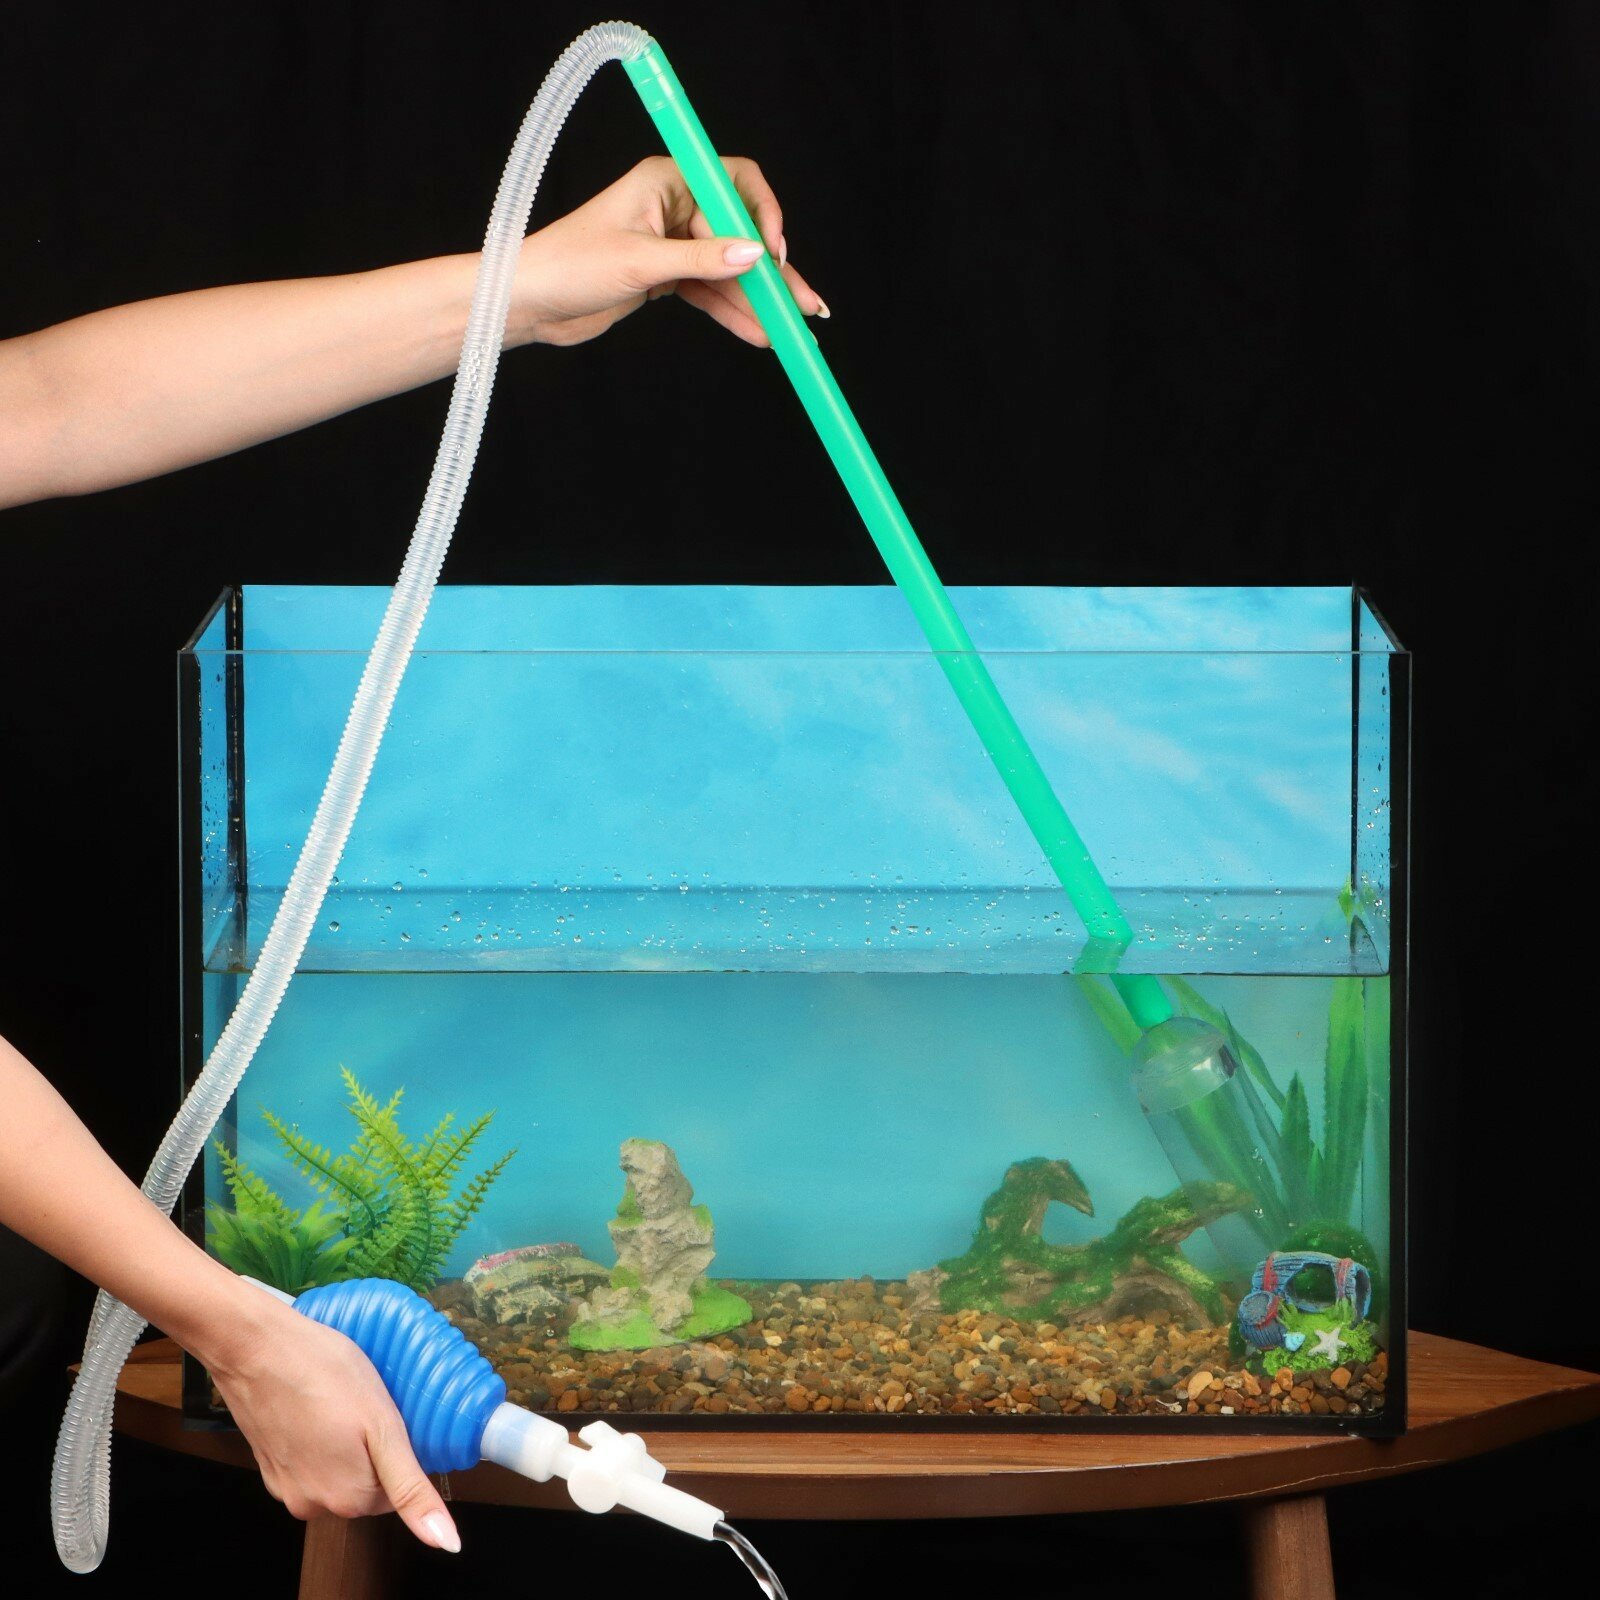 Сифон аквариумный "Пижон" улучшенный, с грушей, сеткой и регулятором потока воды, 2,1 м (1шт.)